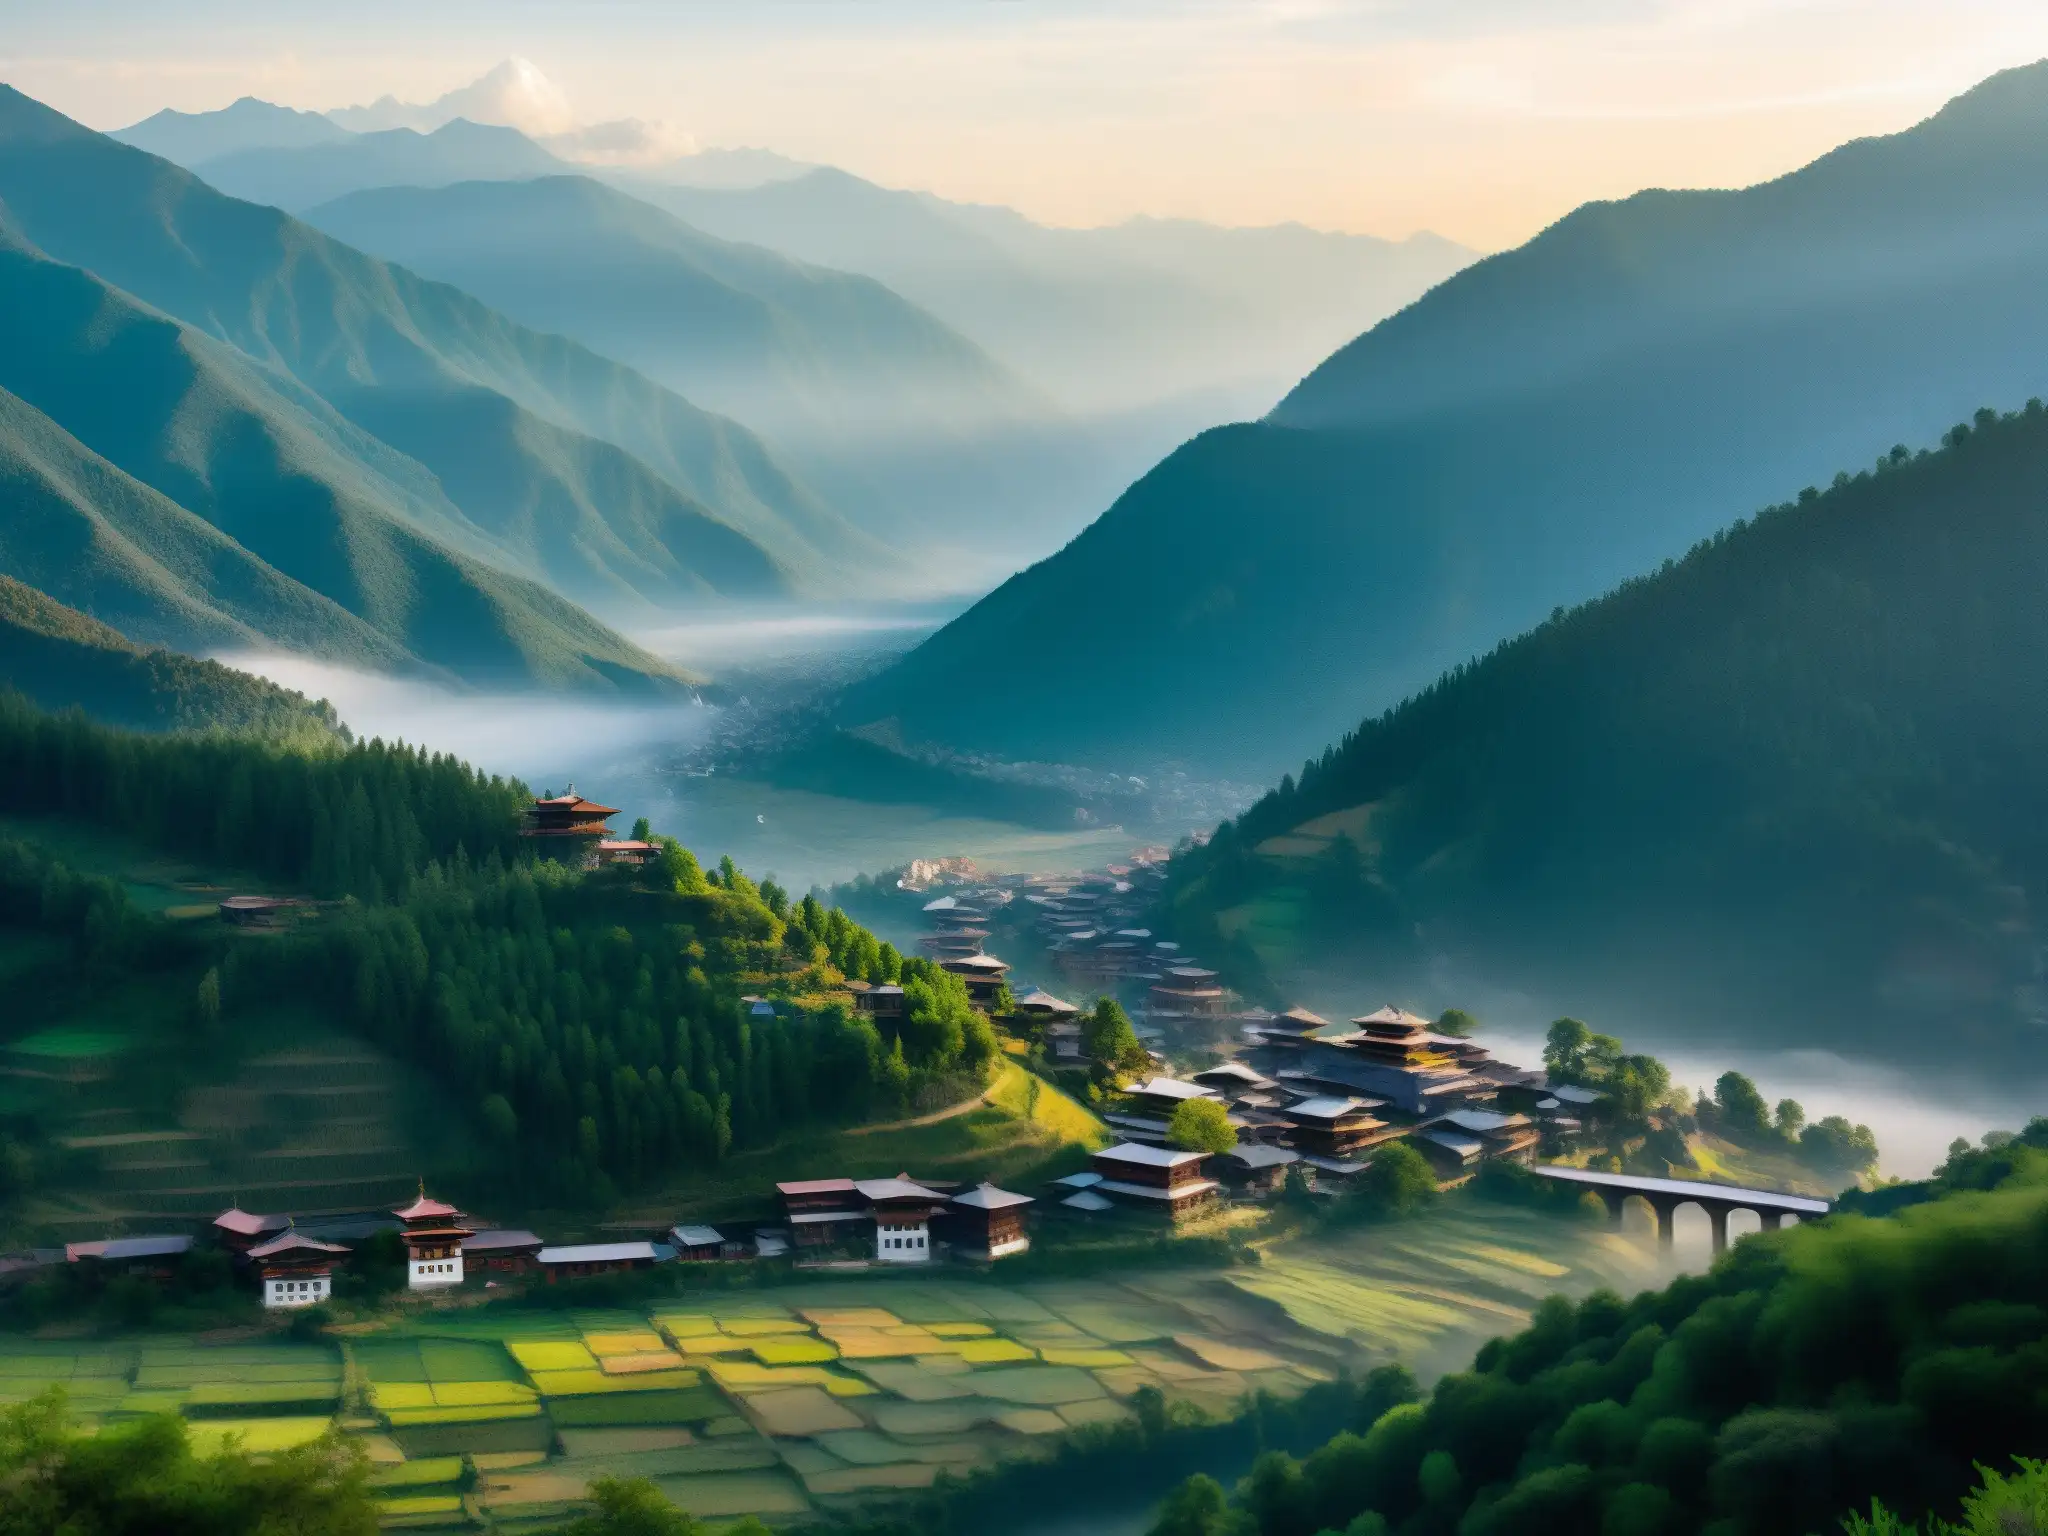 La misteriosa Ciudad Fantasma de Thimphu, envuelta en niebla y rodeada de montañas, revela su intrigante arquitectura y su enigmática historia